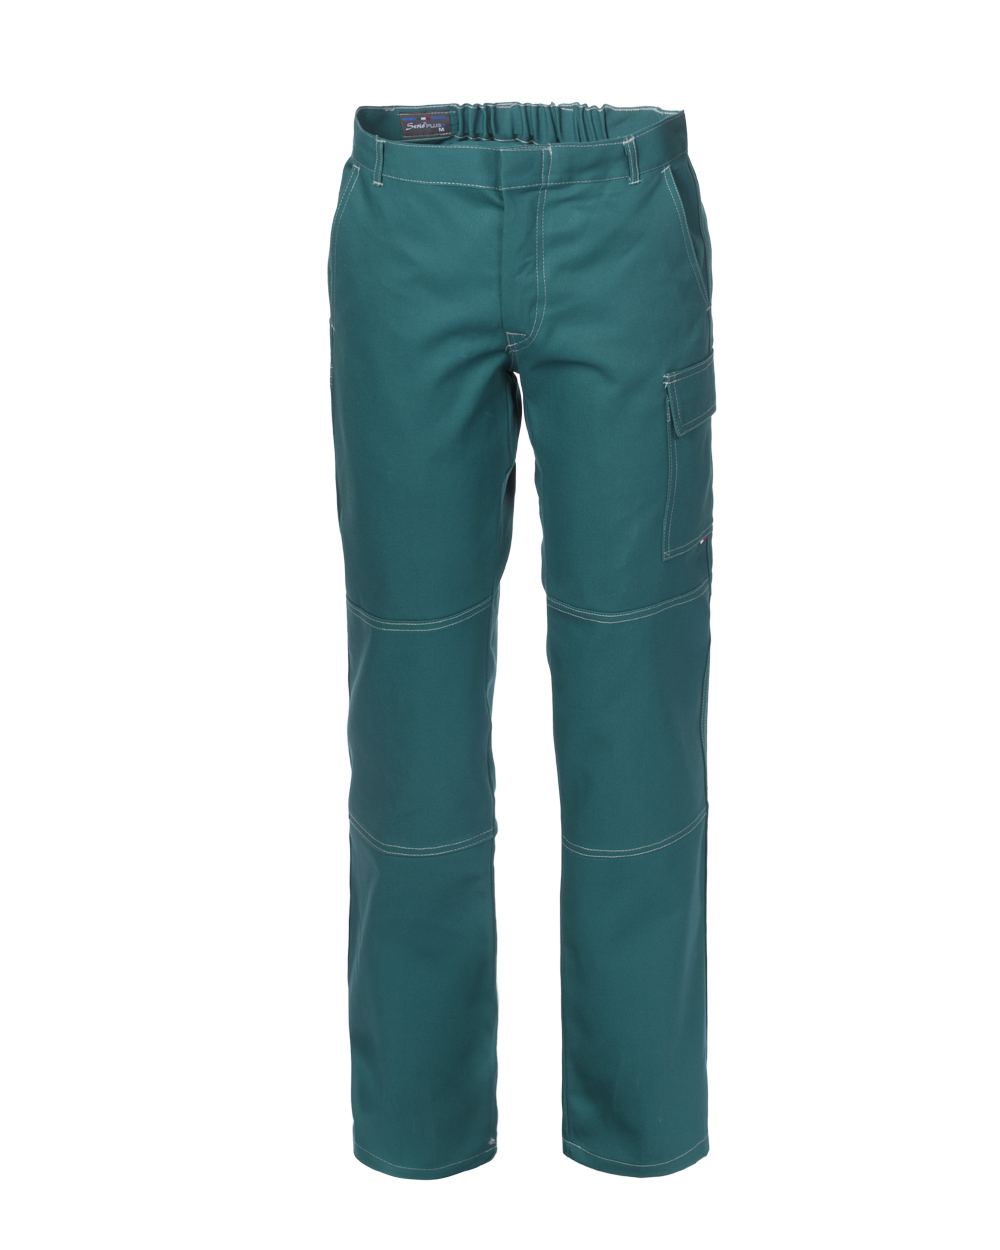 Pantalone Serio Plus verde